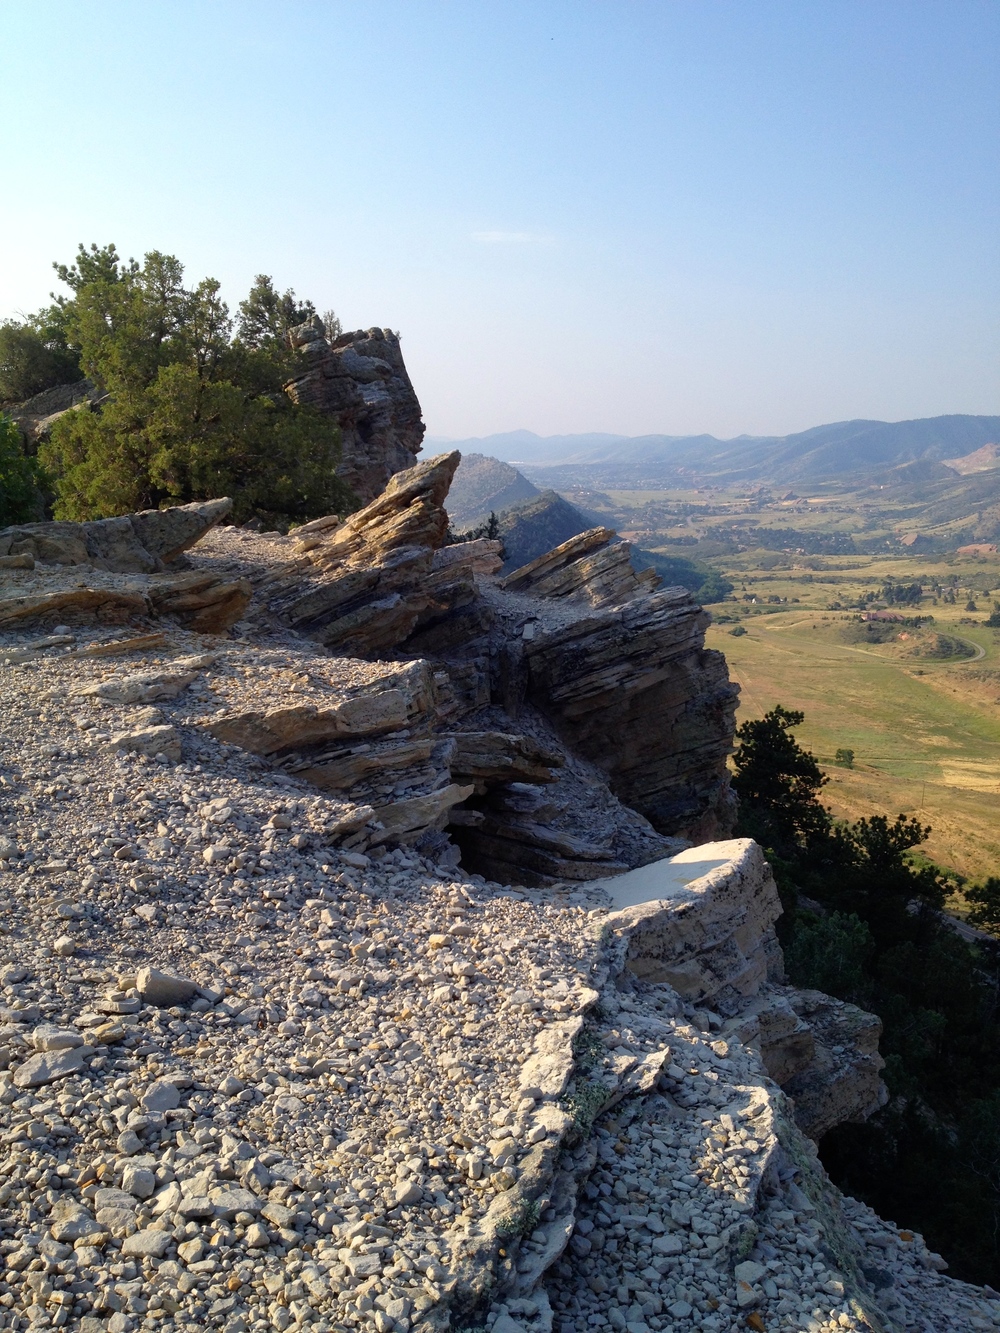 Views along the Dakota Ridge Trail